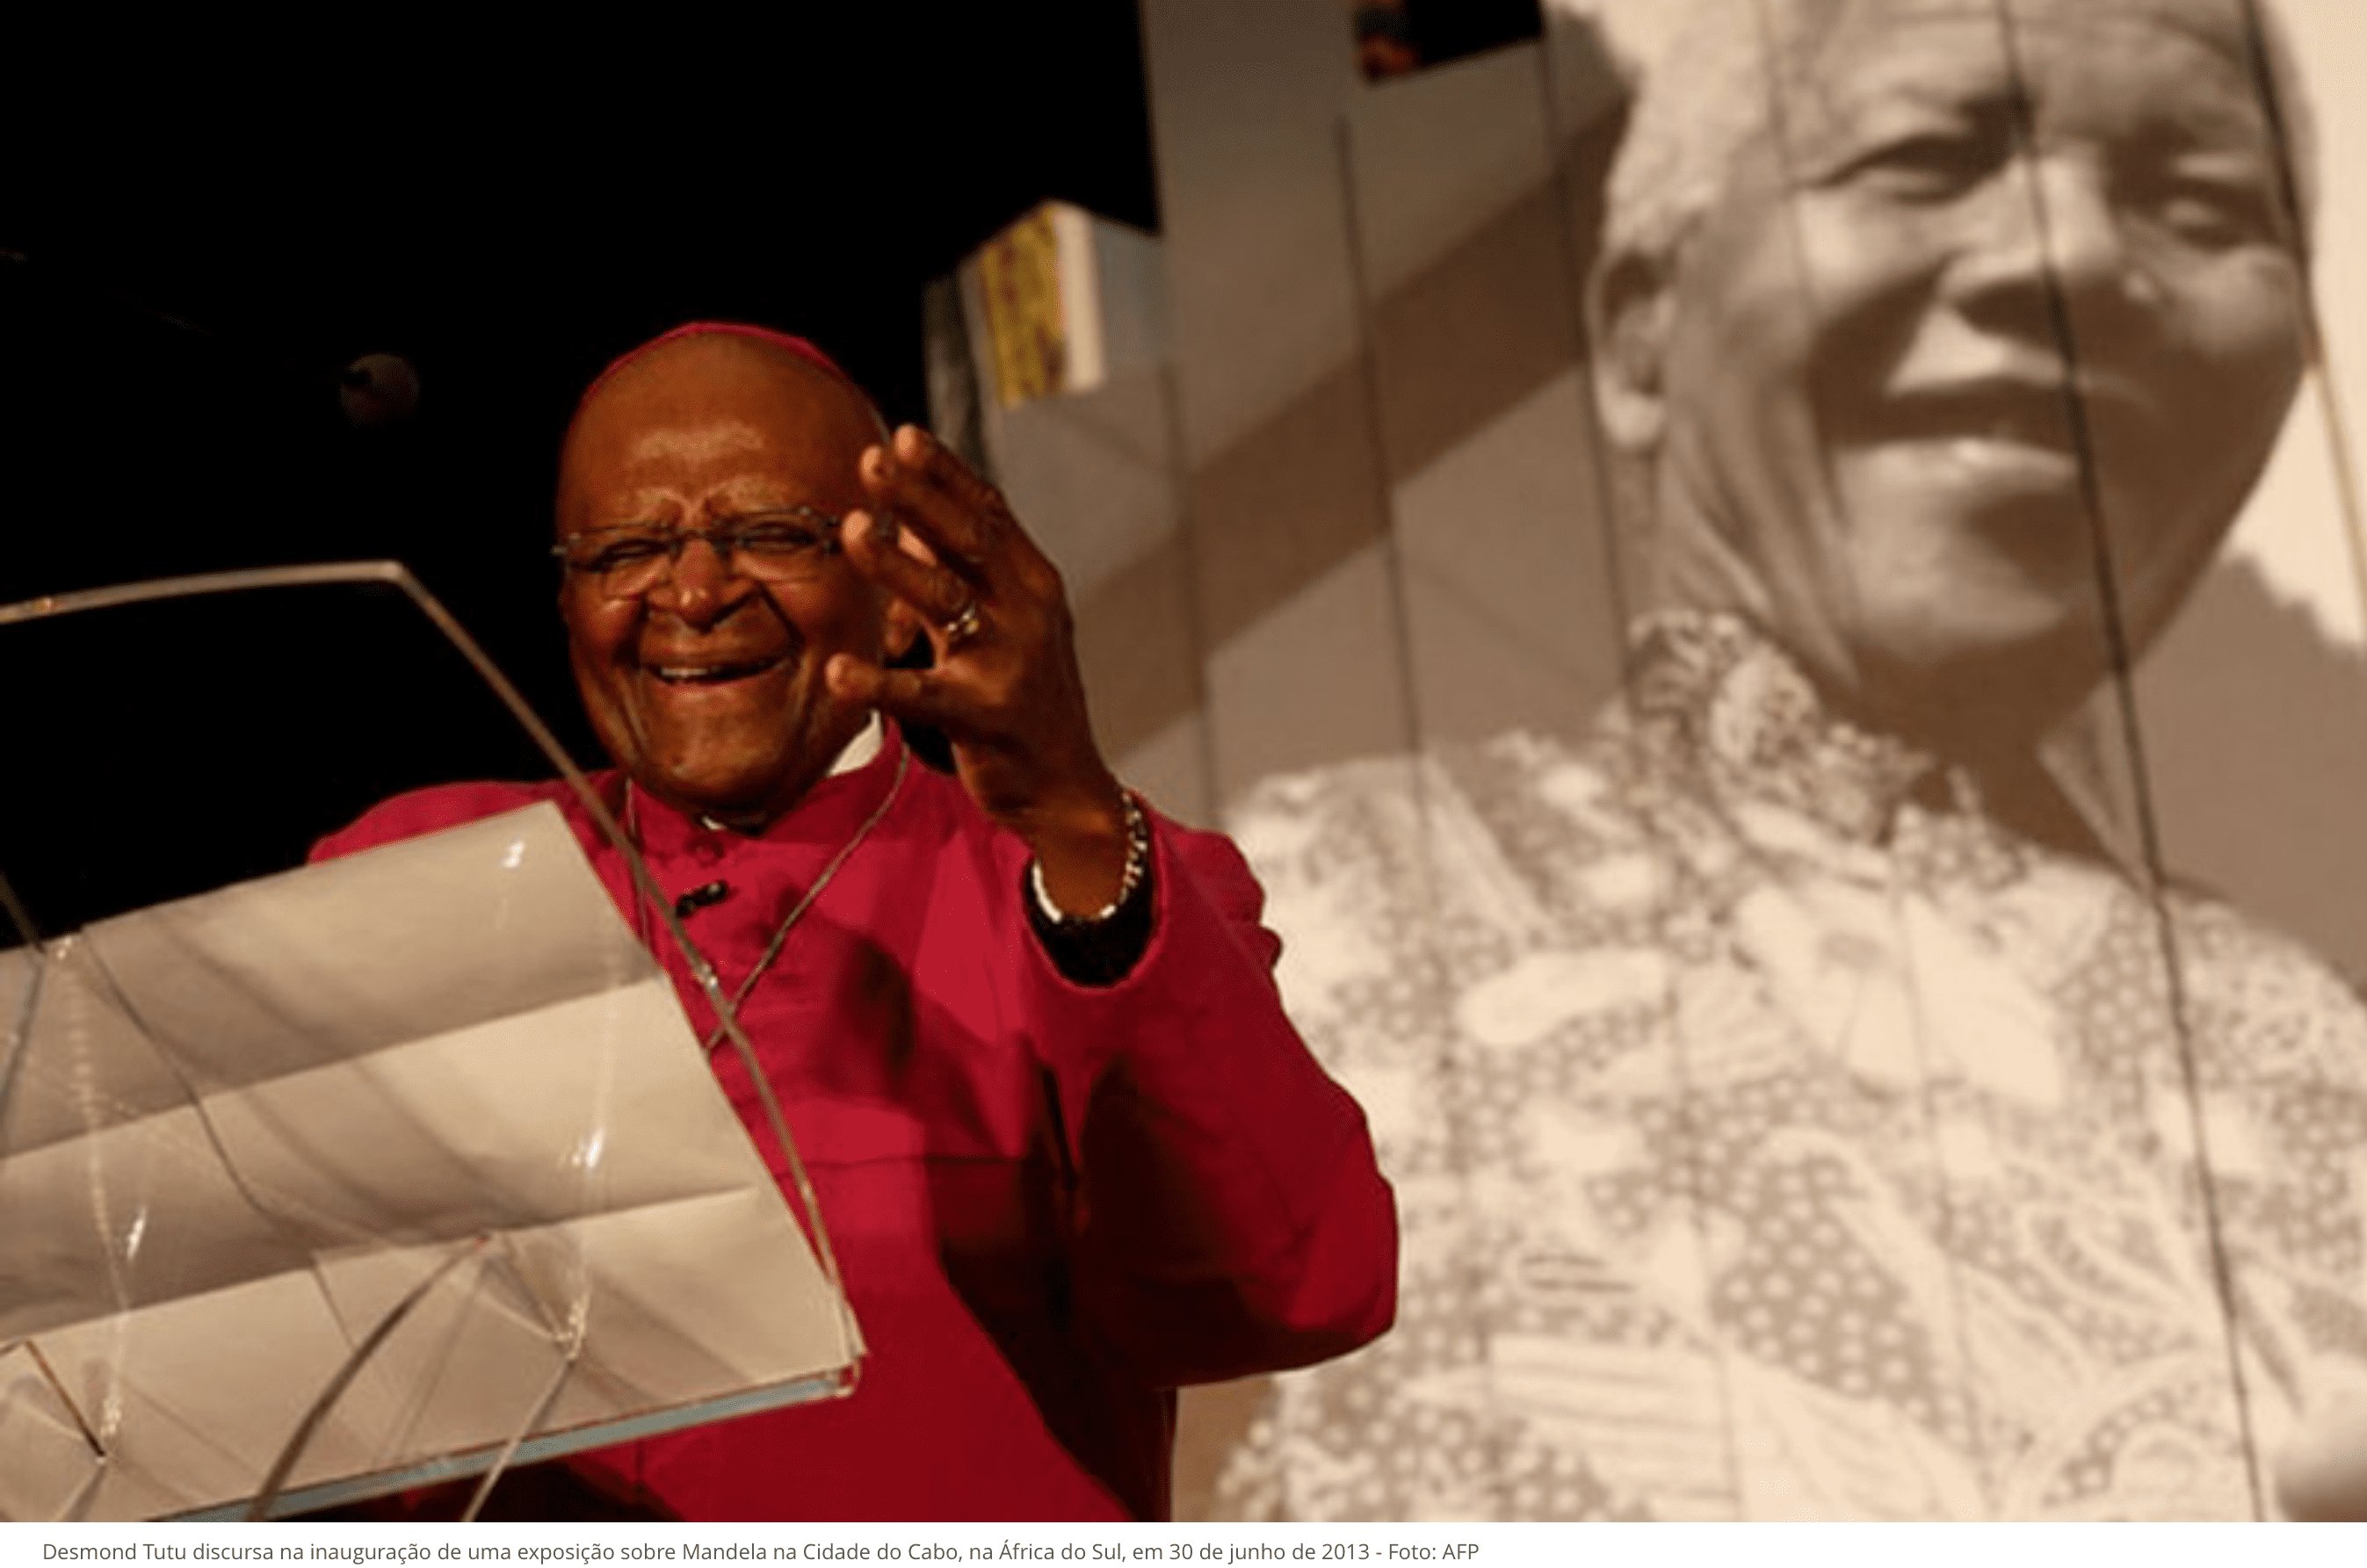 Desmond Tutu, arcebispo da África do Sul e vencedor do Nobel da Paz, morre aos 90 anos